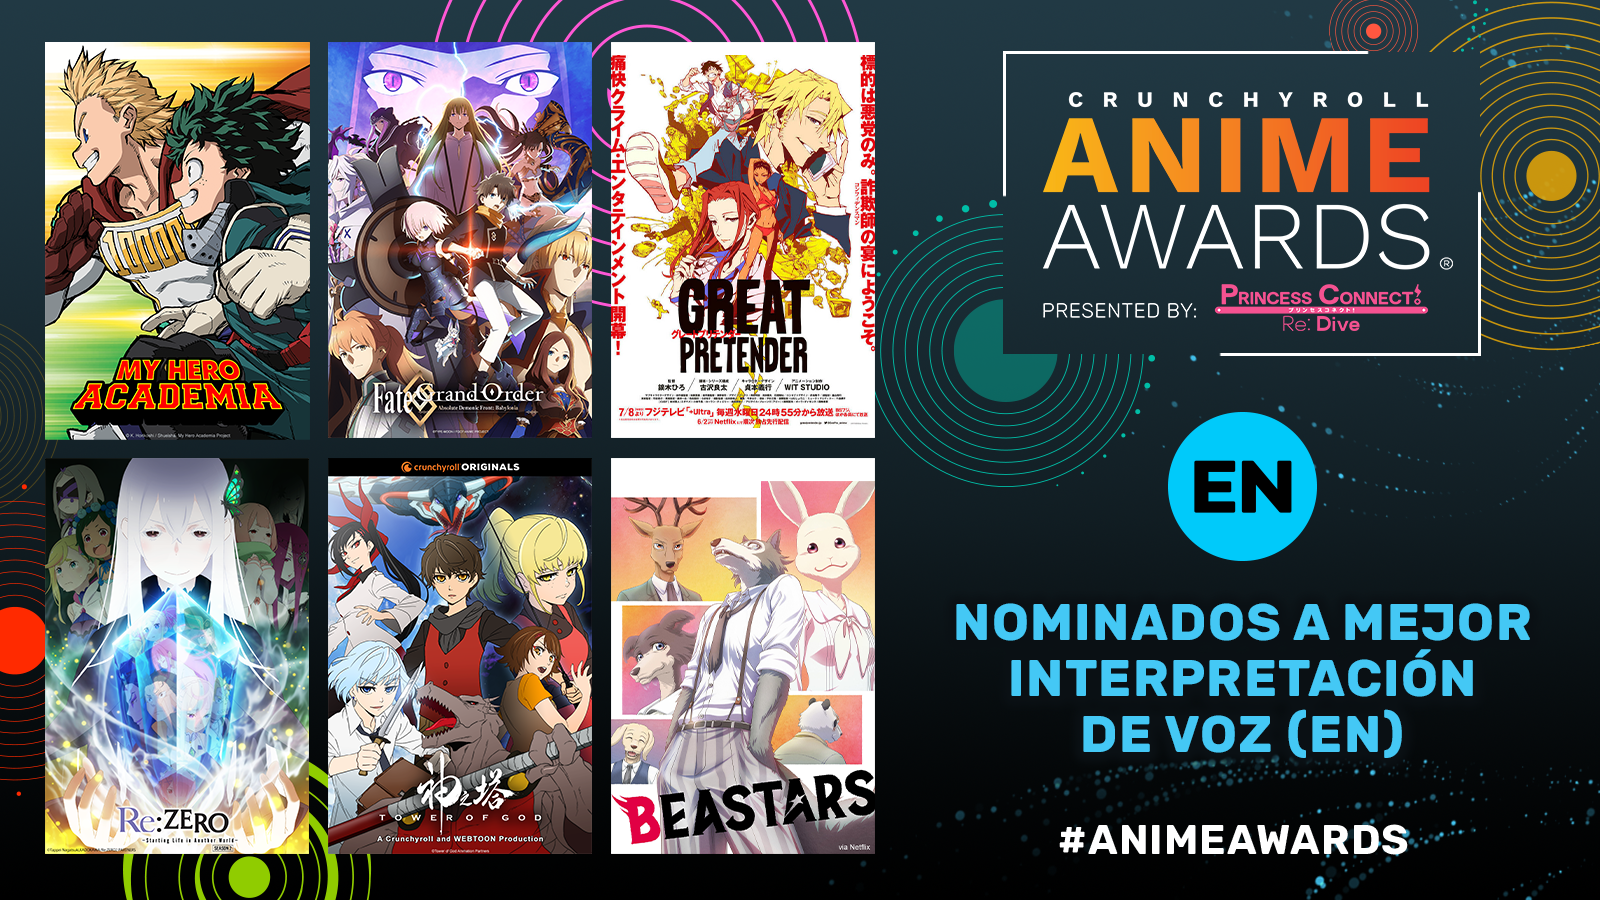 Crunchyroll Anime Awards 2021 ¡Vota por tu favorito! 9